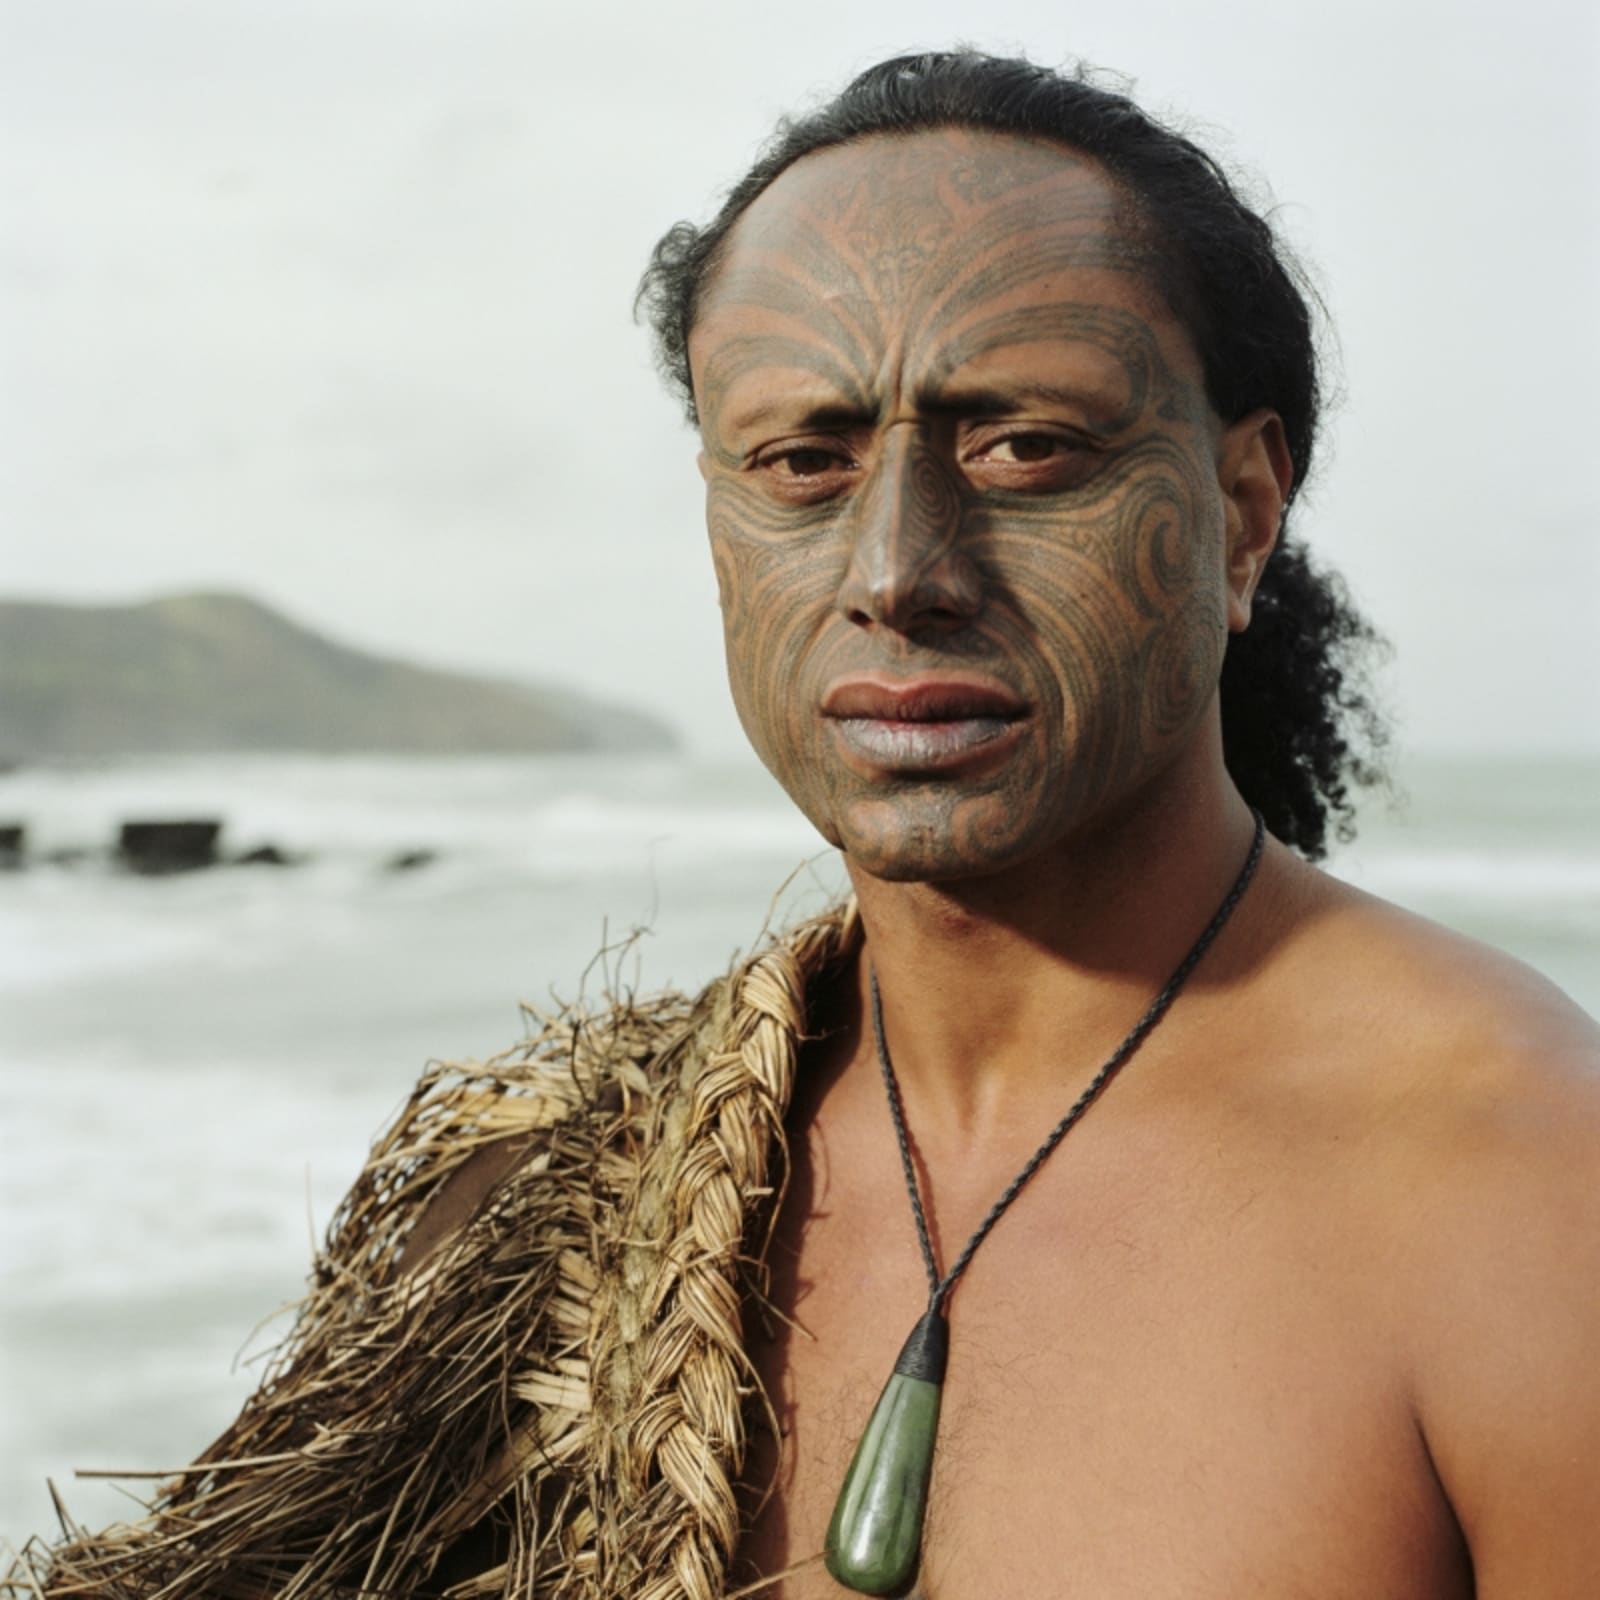 Traditional Tā moko Māori tattoo